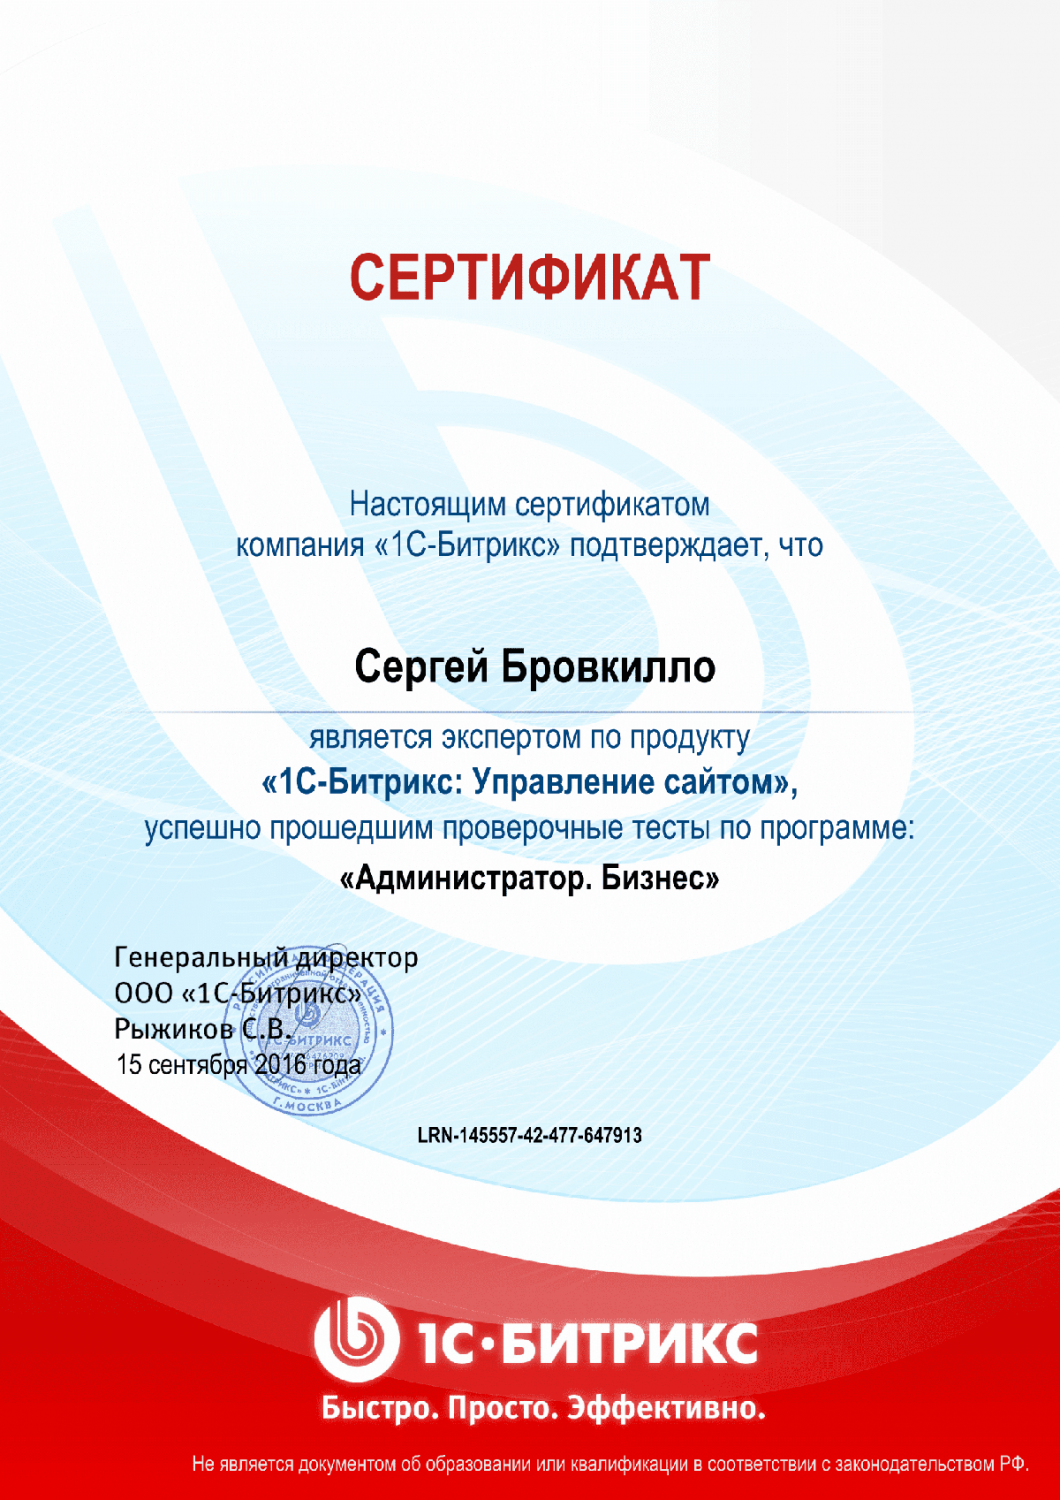 Сертификат эксперта по программе "Администратор. Бизнес" в Пензы